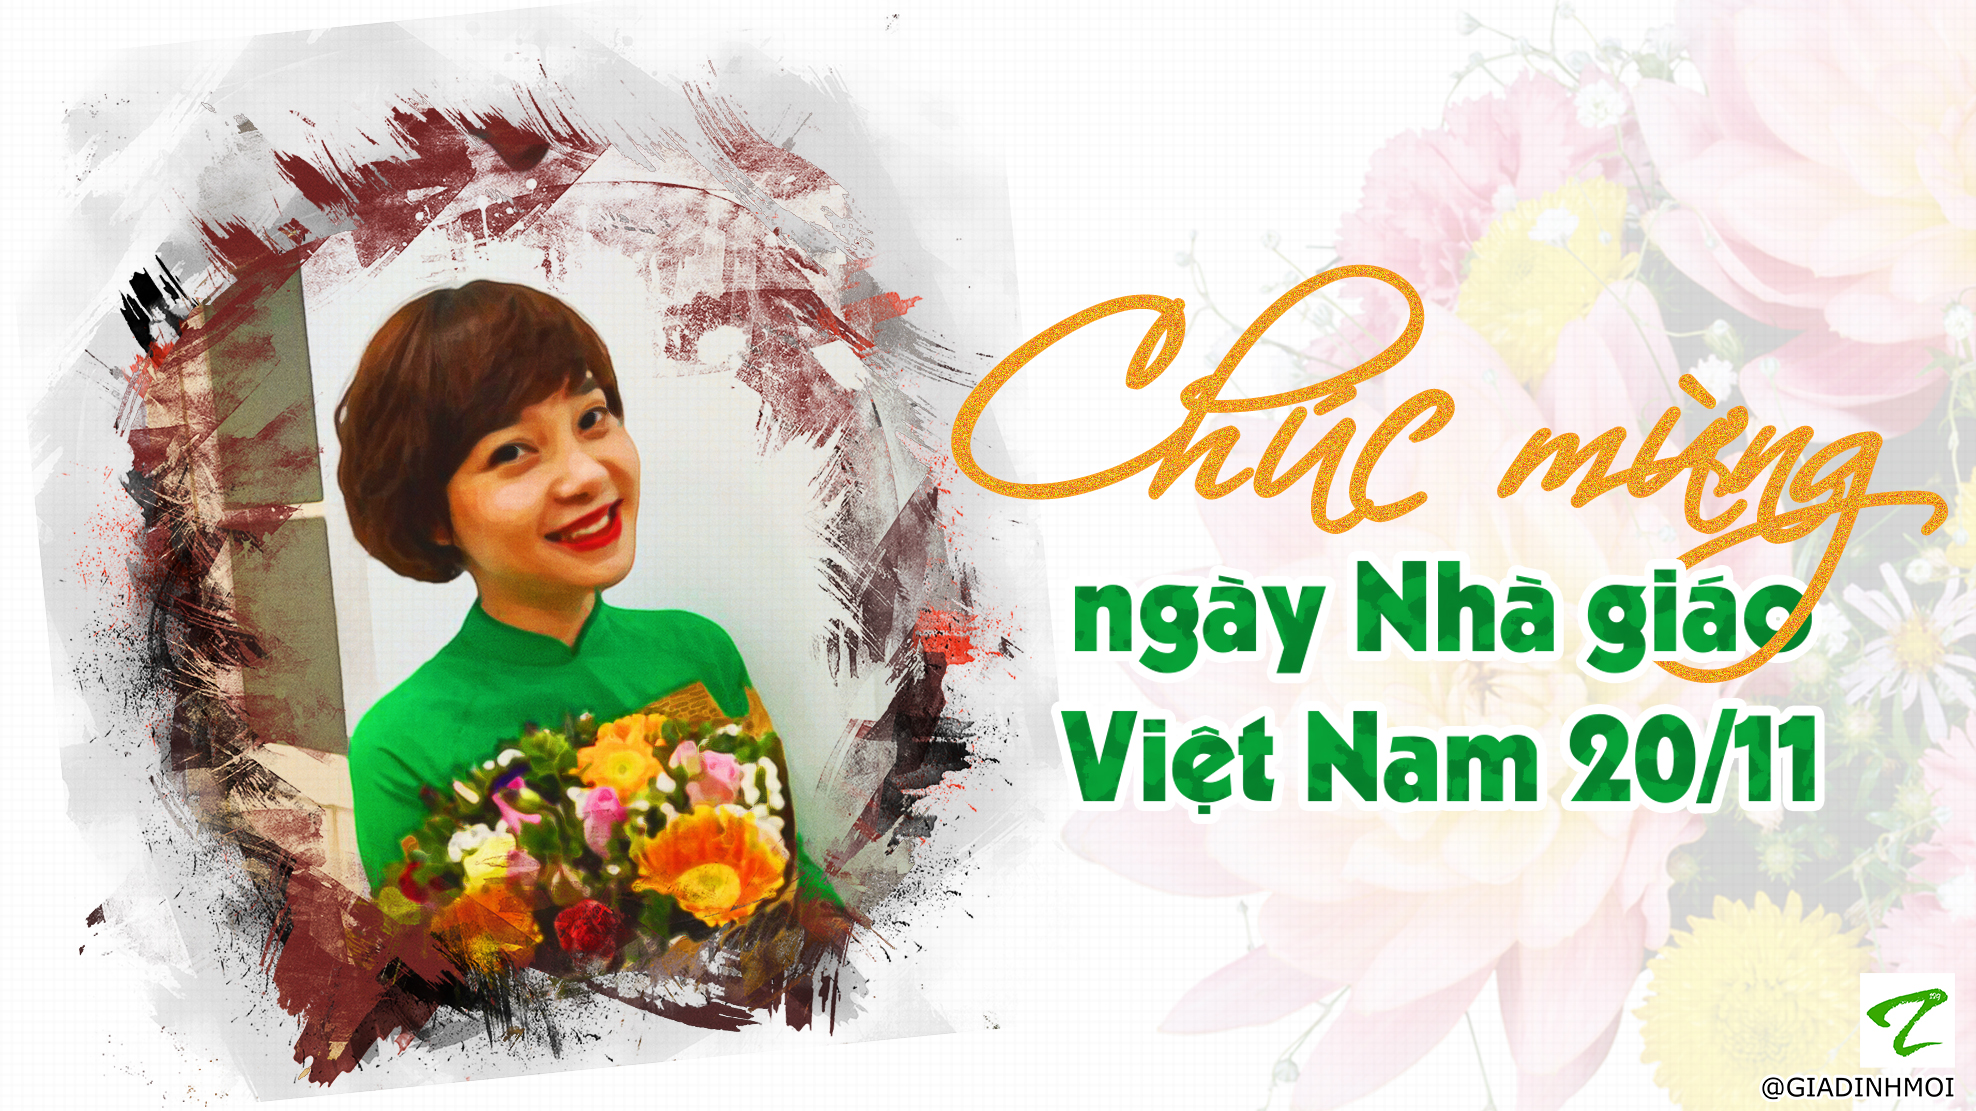   Lời chúc ngày 20/11 tặng thầy cô giáo bằng tiếng Anh và tiếng Việt  